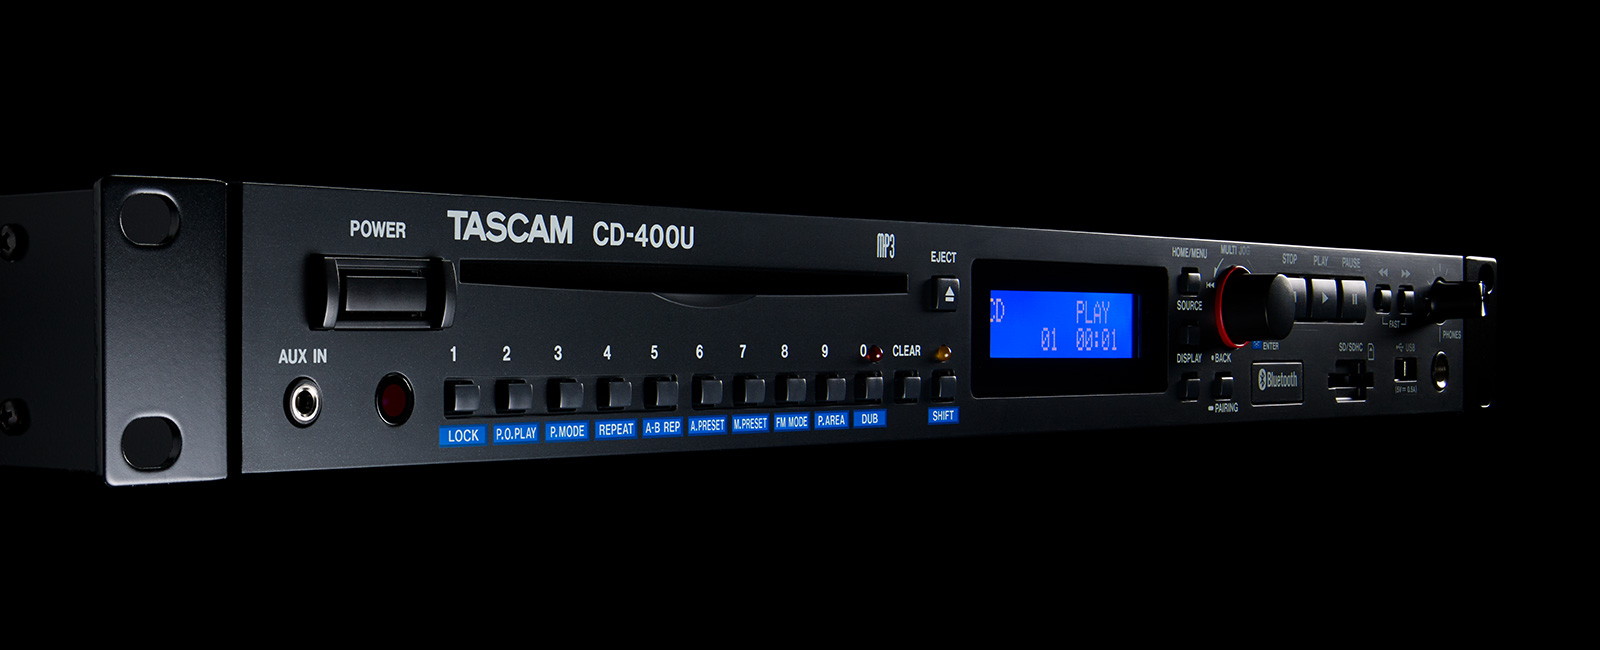 『CD-400U』の最新ファームウェア V1.27をリリース